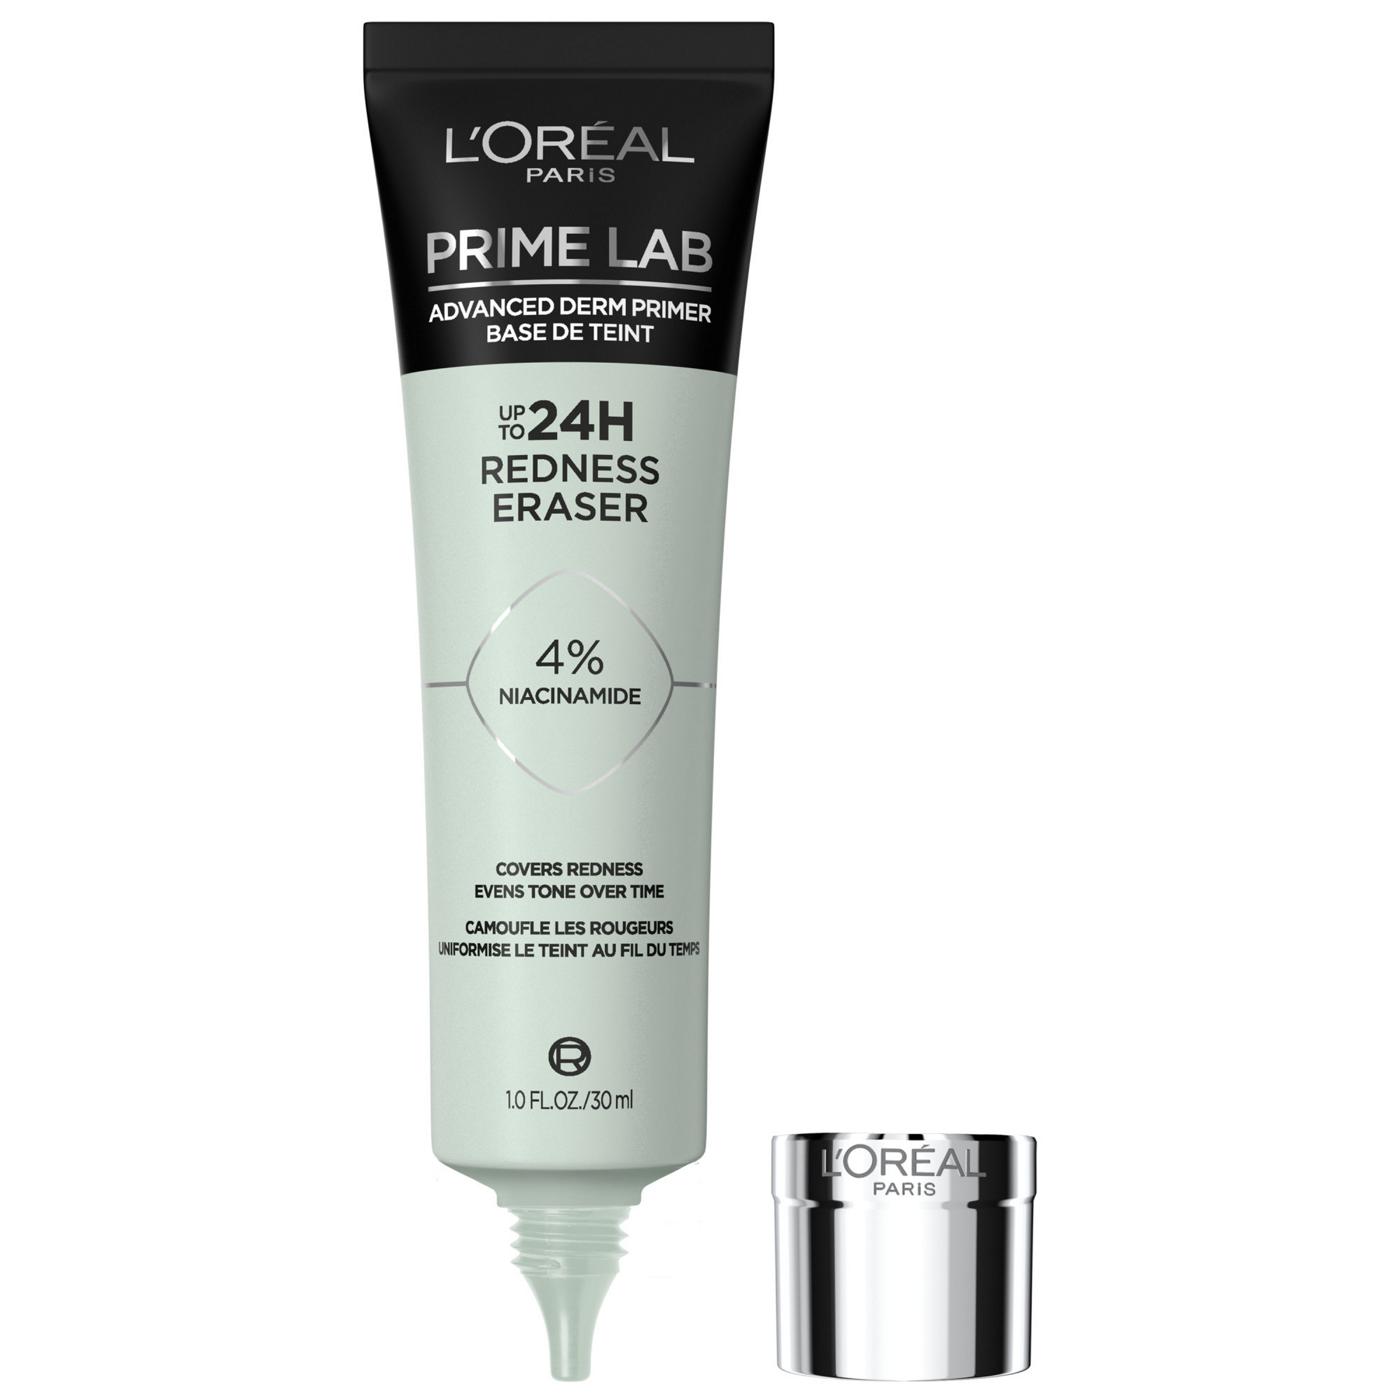 L'Oréal Paris Prime Lab Primer Redness Eraser; image 1 of 6